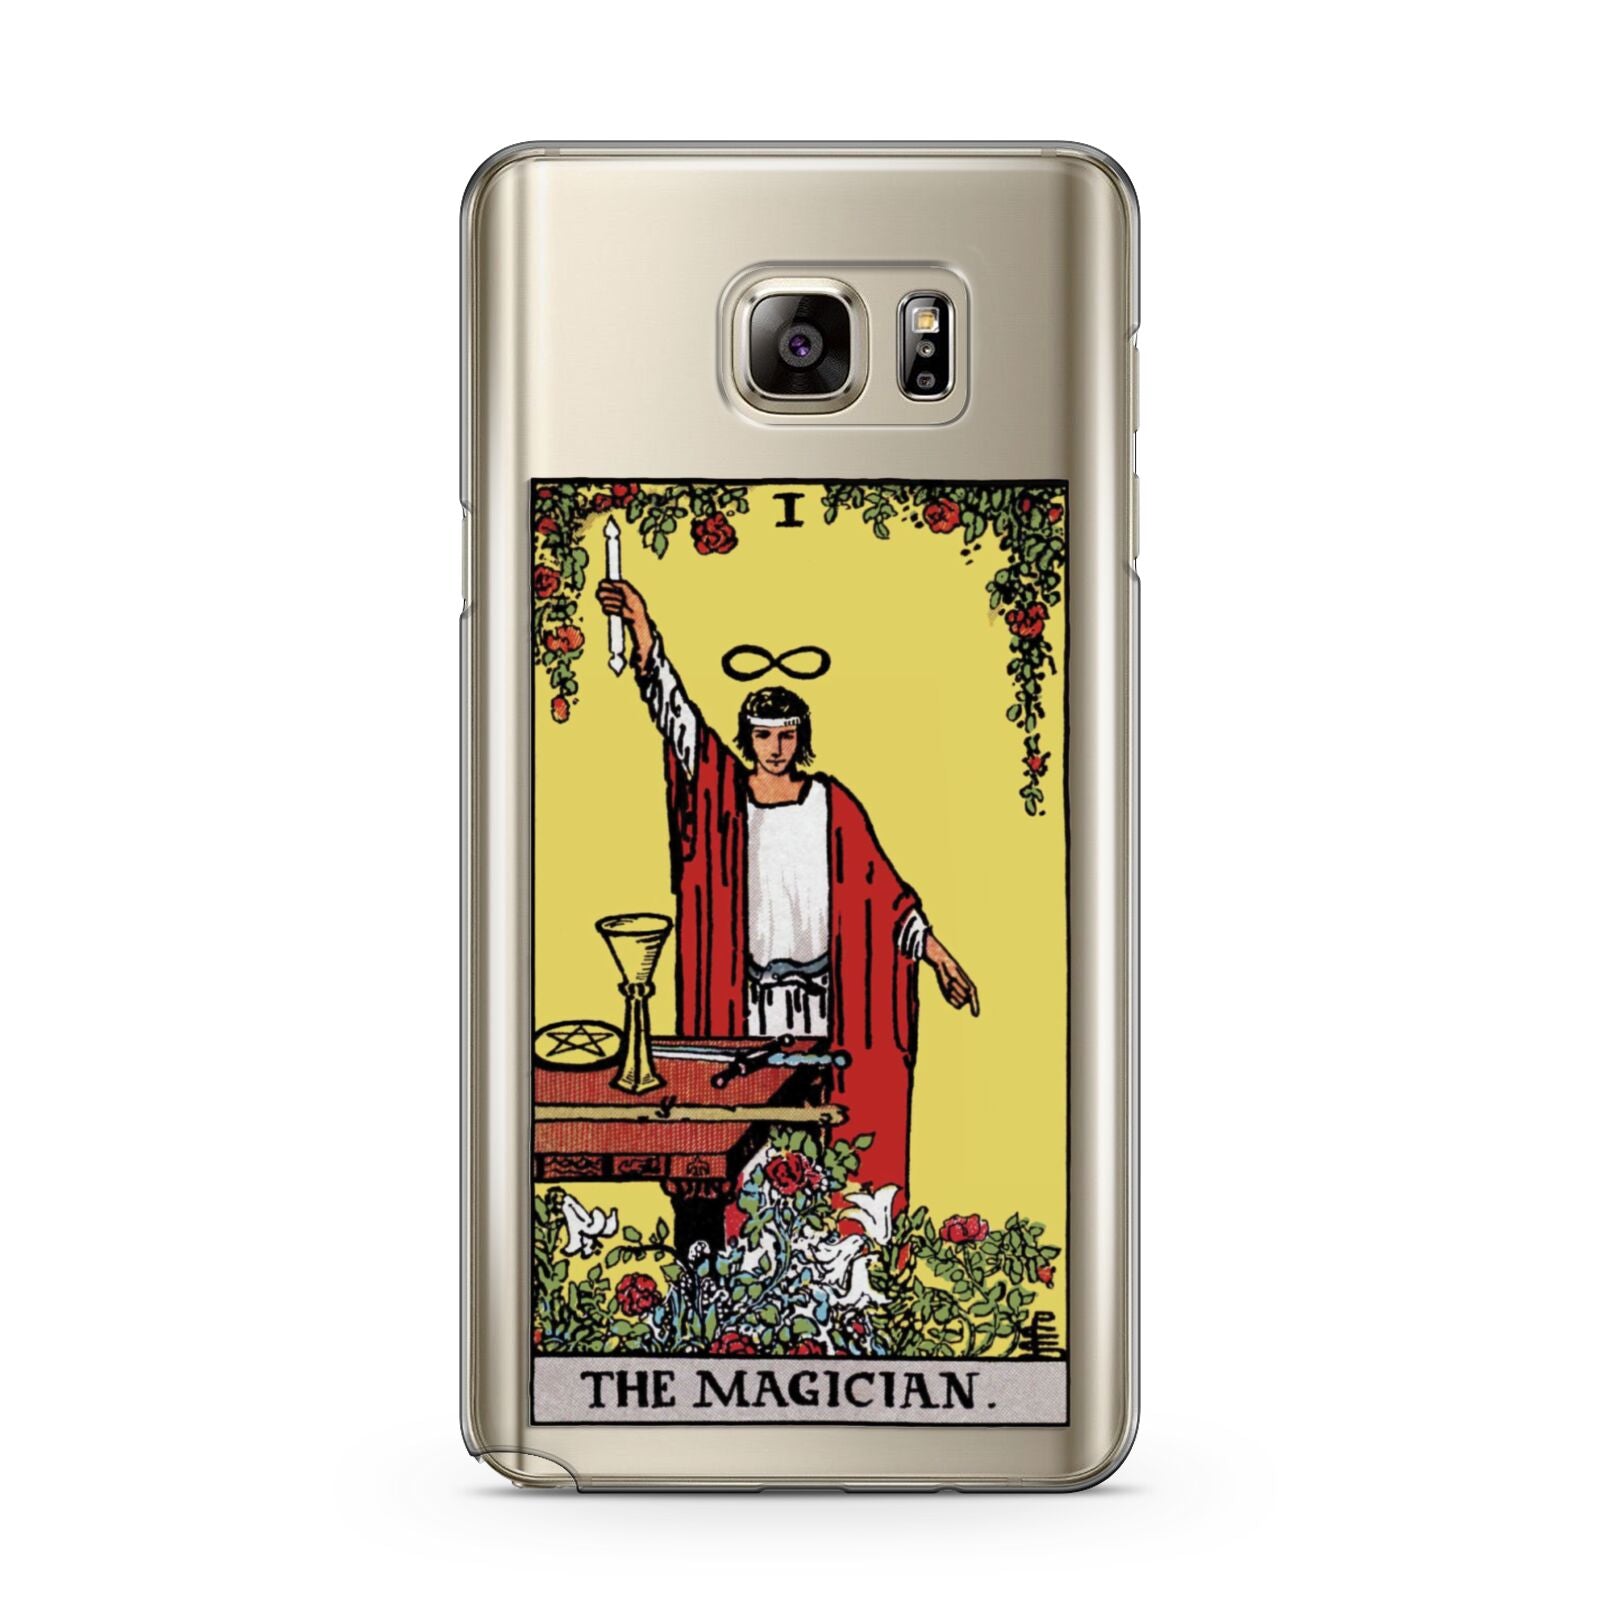 The Magician Tarot Card Samsung Galaxy Note 5 Case